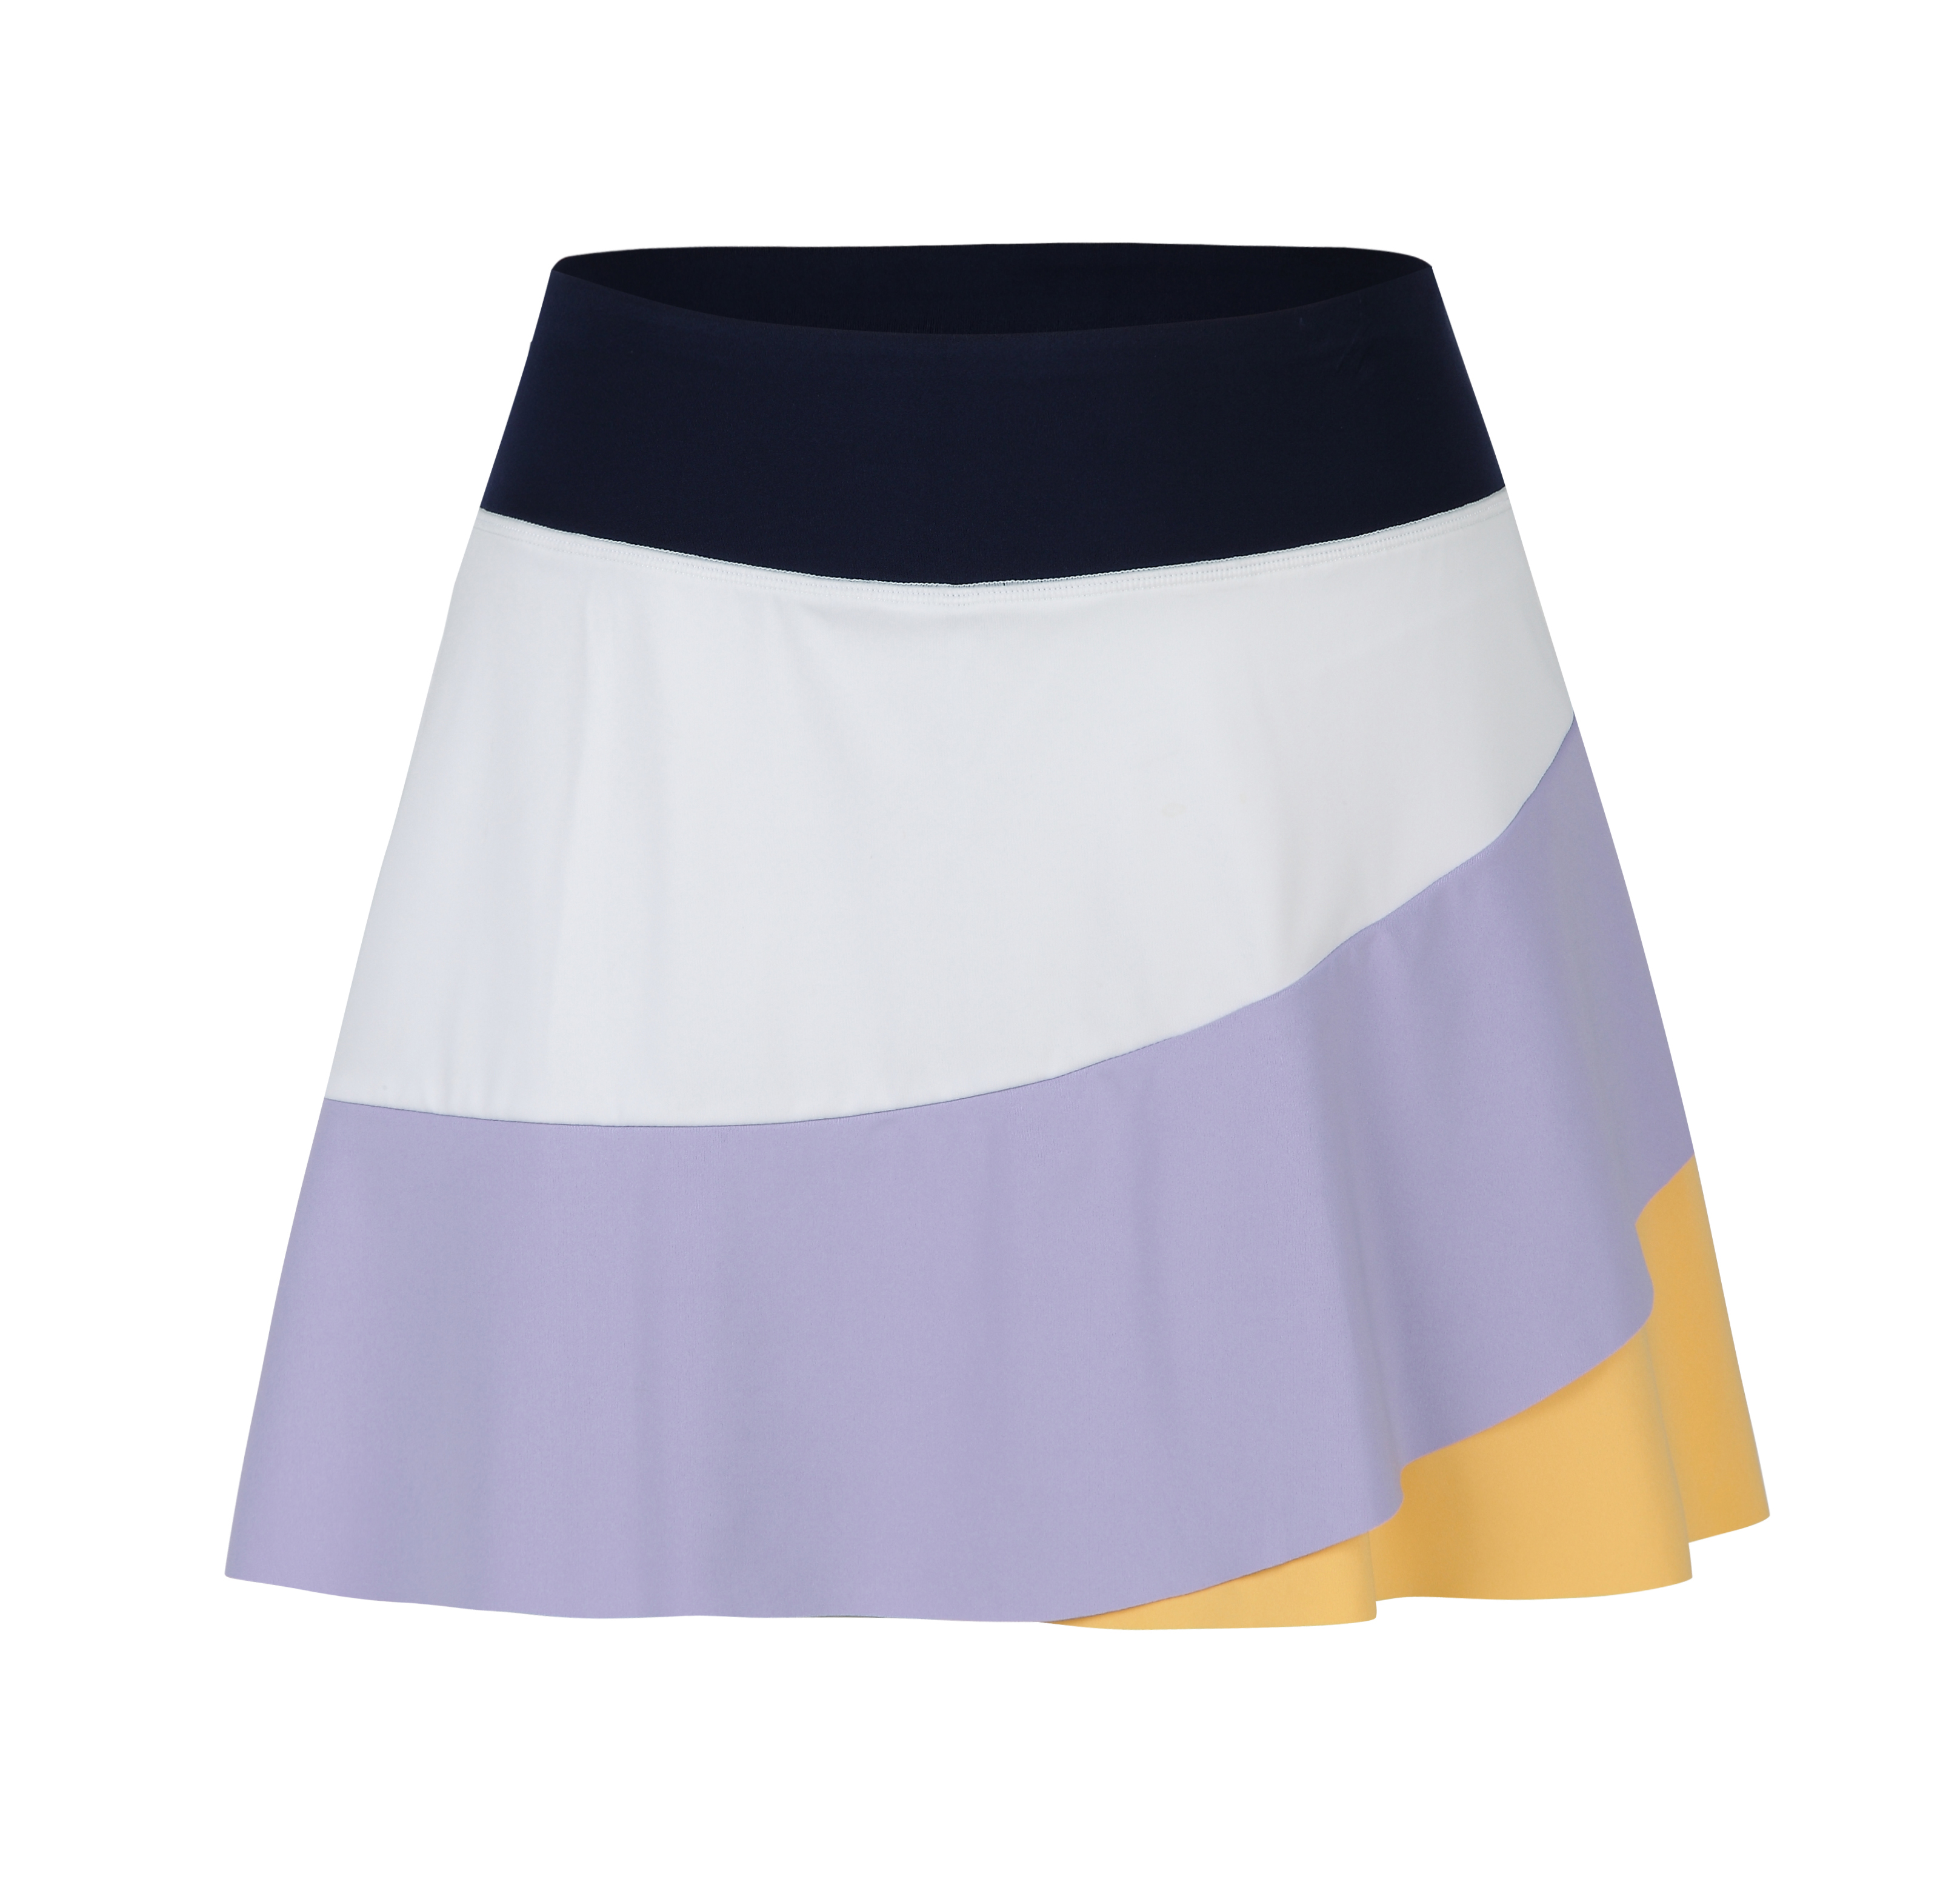 Women's running shorts running skirts